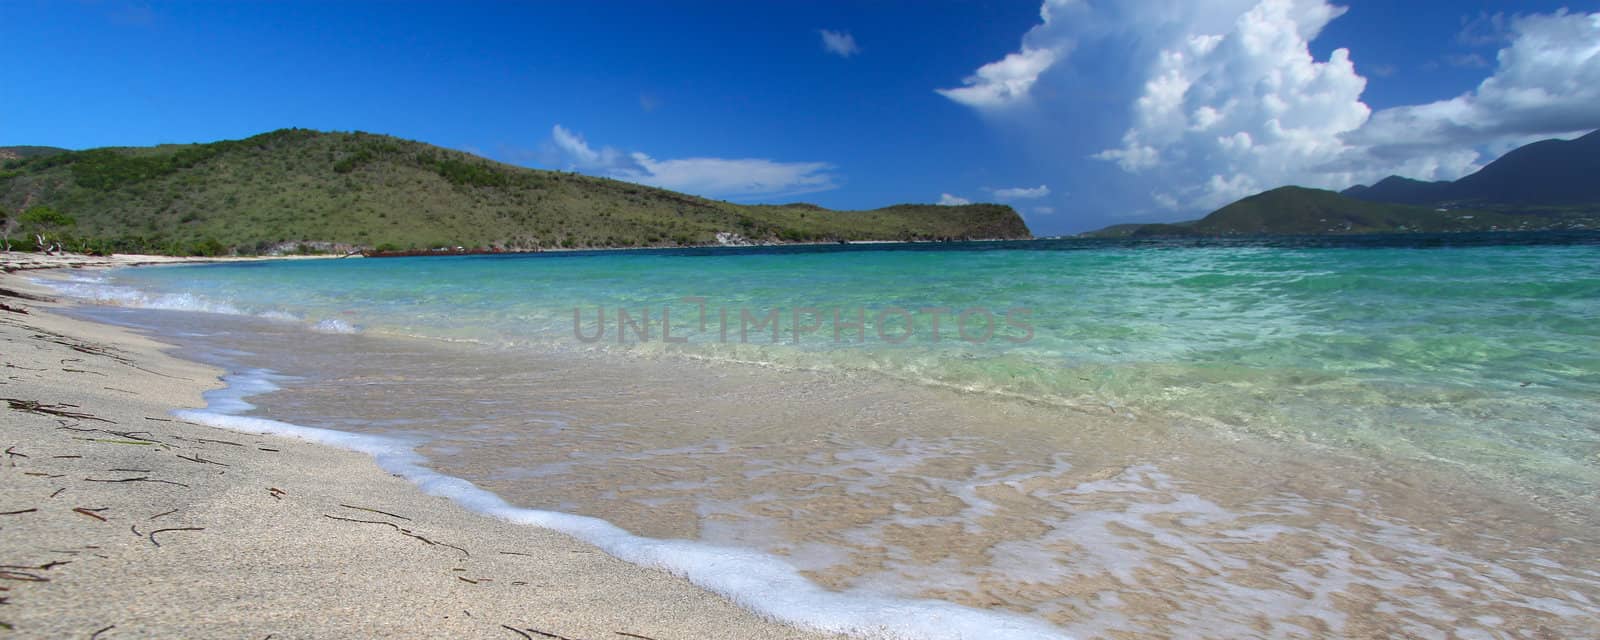 Majors Bay Beach on the Caribbean island of Saint Kitts.